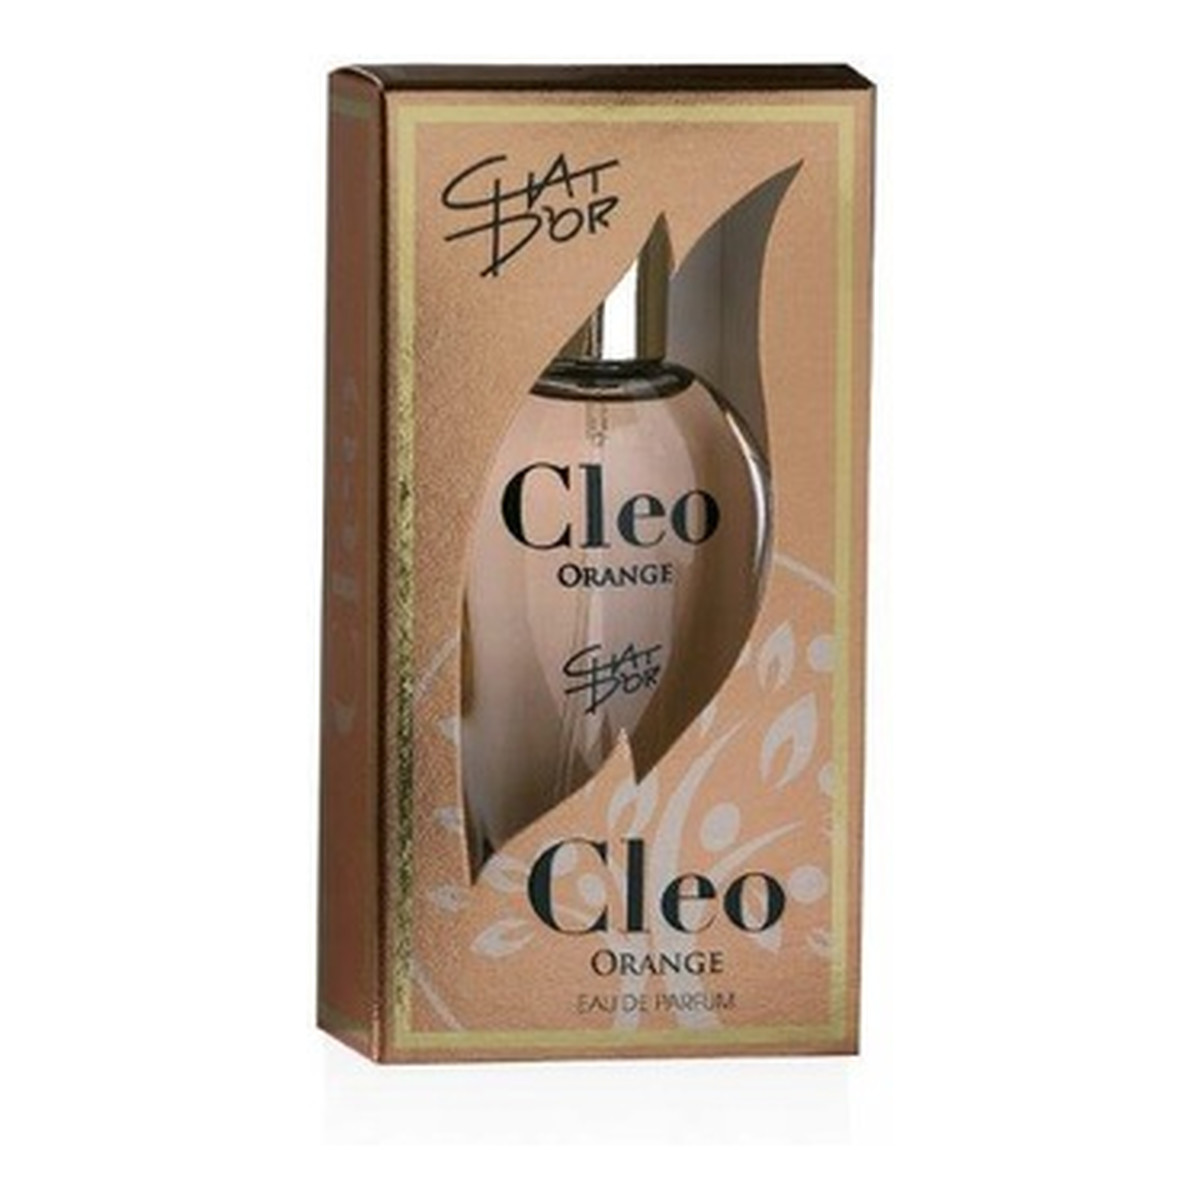 Chat D'or Cleo Orange Woda perfumowana spray 30ml